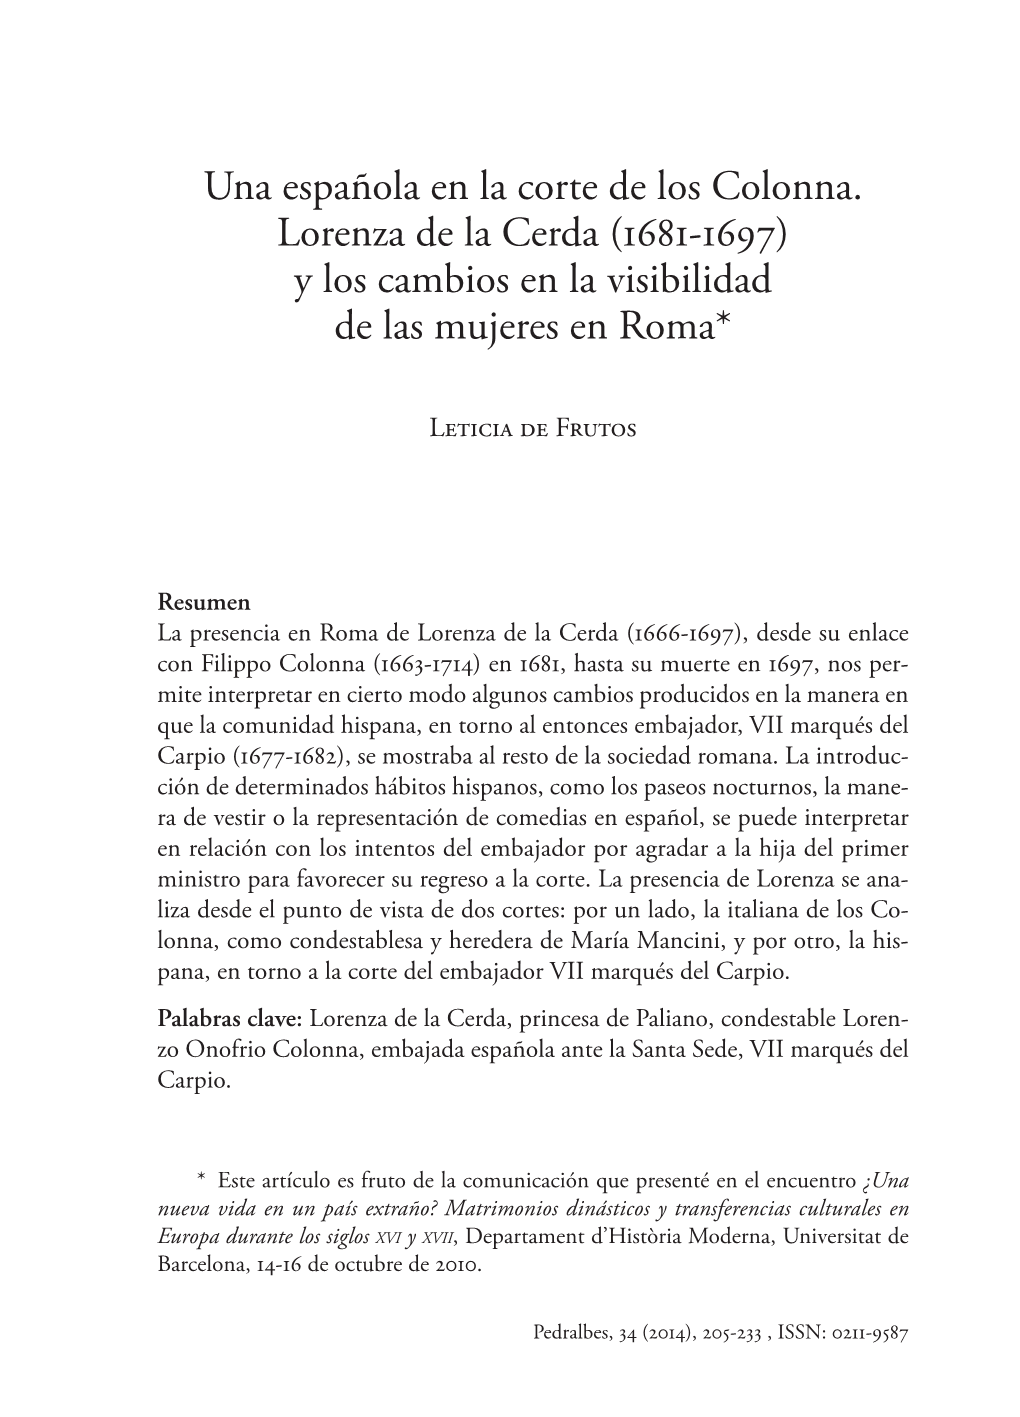 Una Española En La Corte De Los Colonna. Lorenza De La Cerda (1681-1697) Y Los Cambios En La Visibilidad De Las Mujeres En Roma*